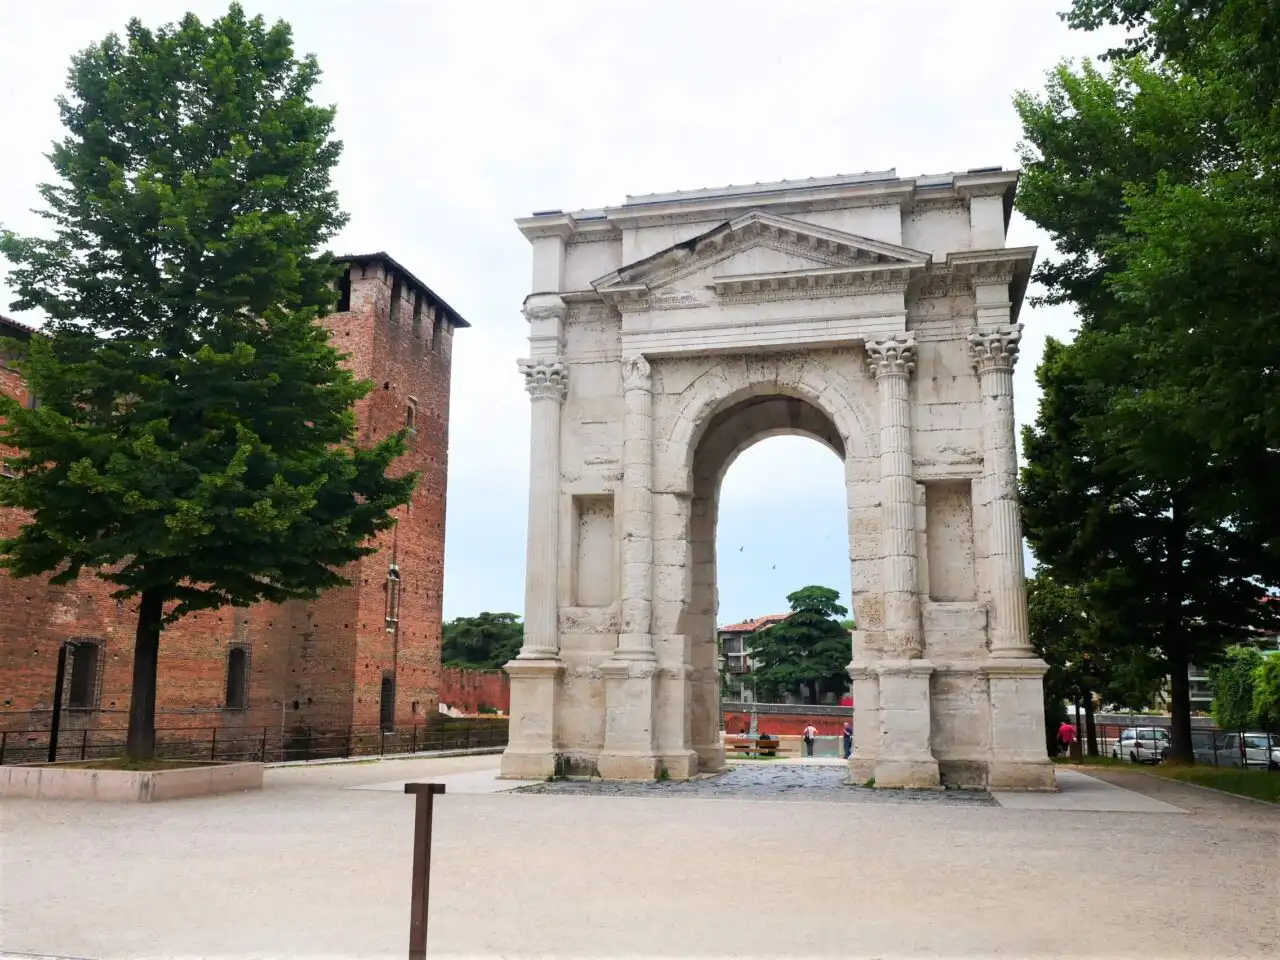 Trimphal arch in Verona